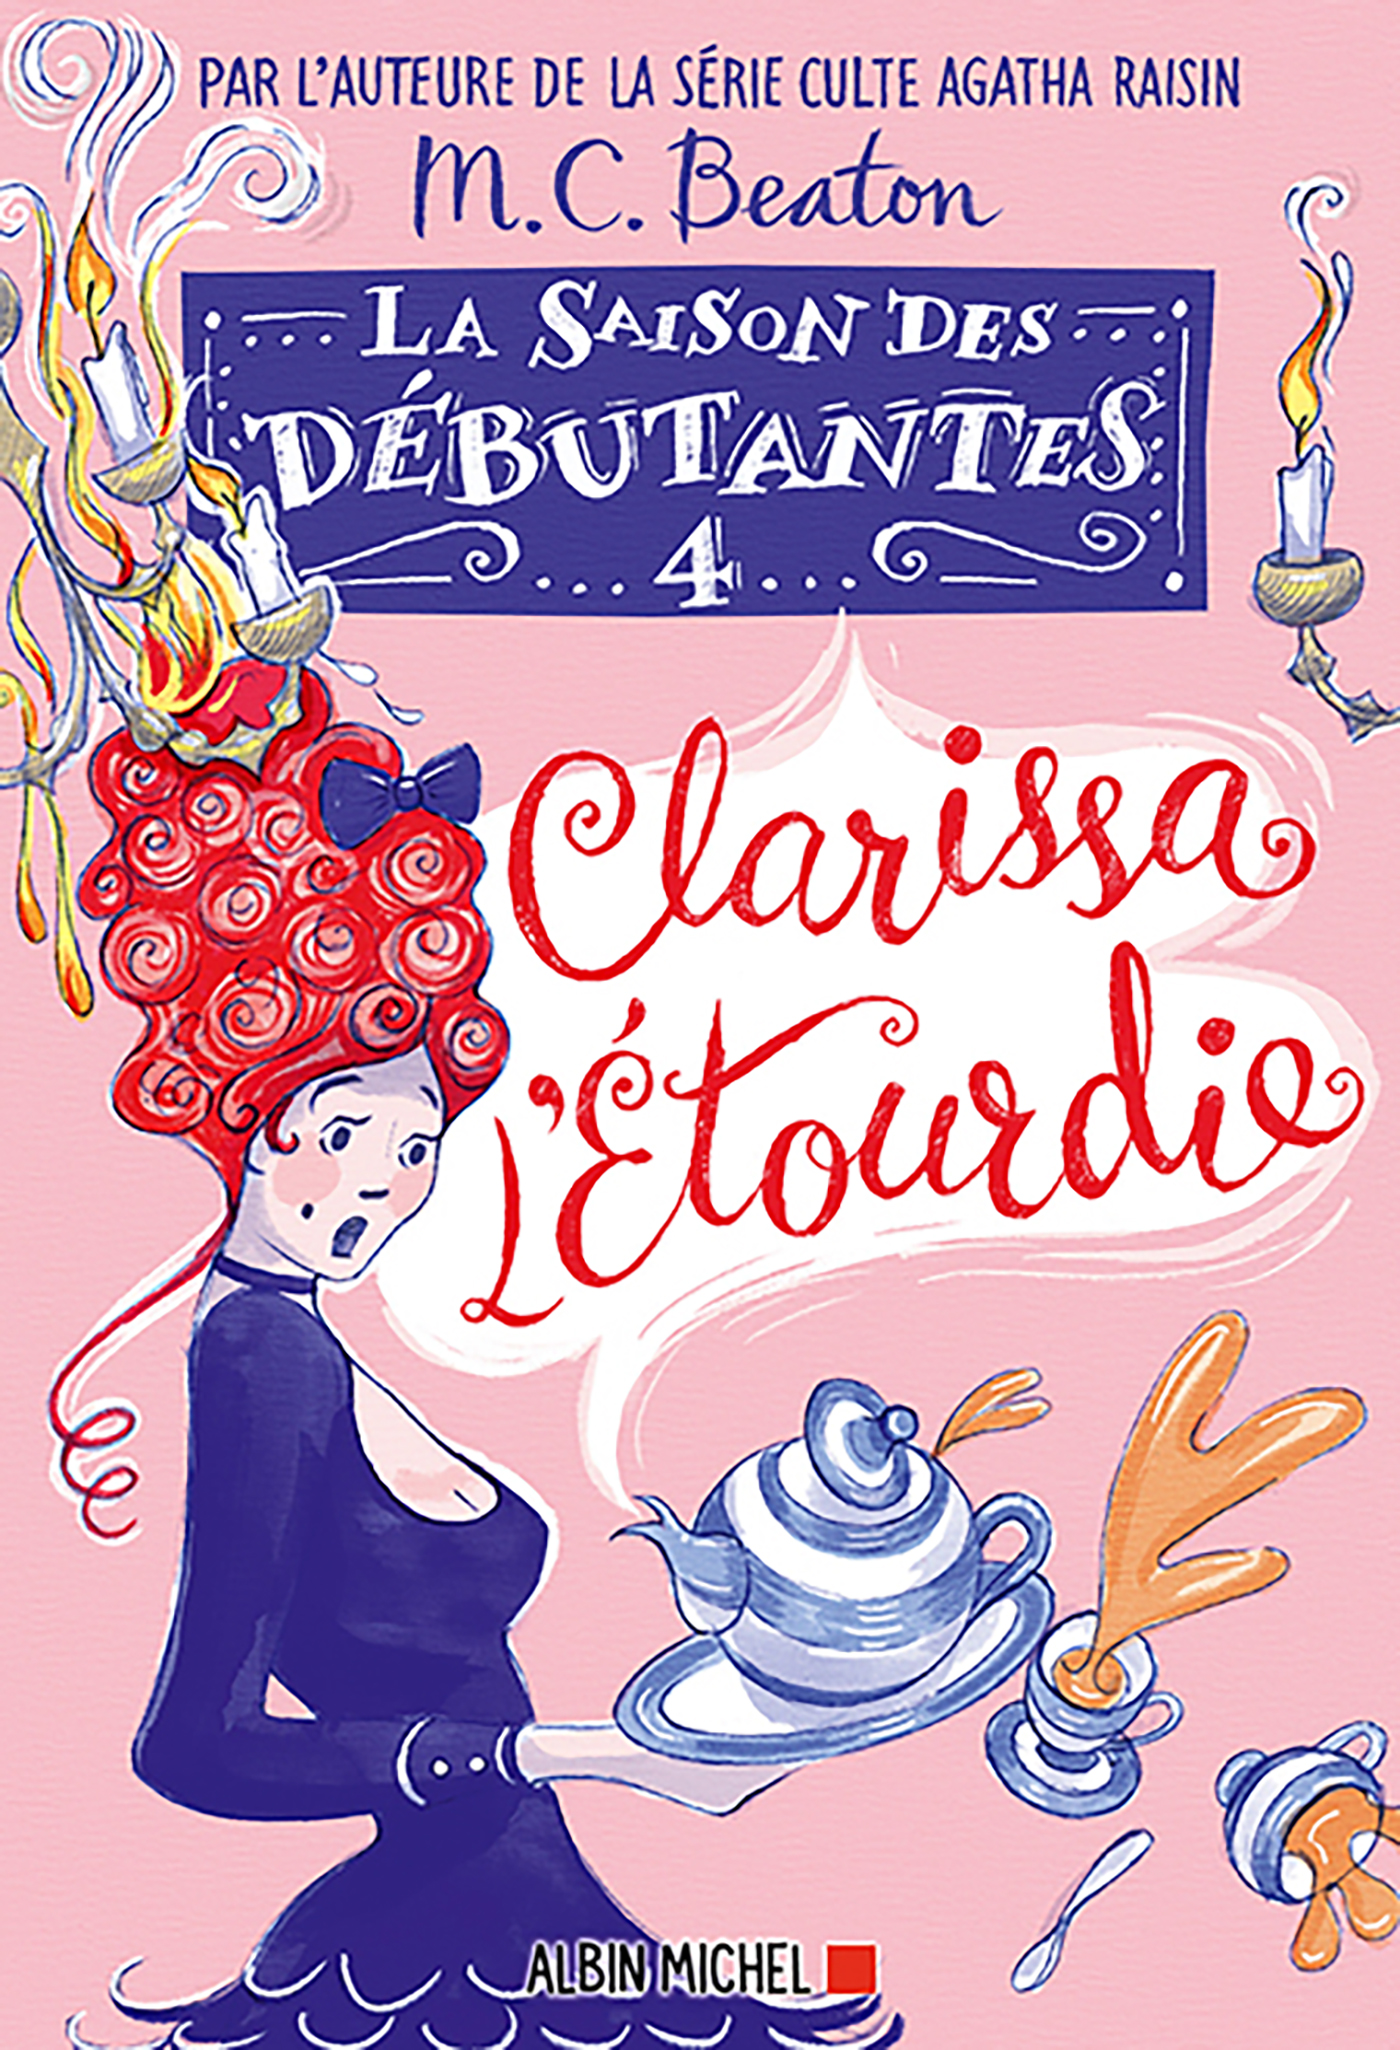 Couverture du livre La Saison des débutantes - tome 4 - Clarissa l'étourdie